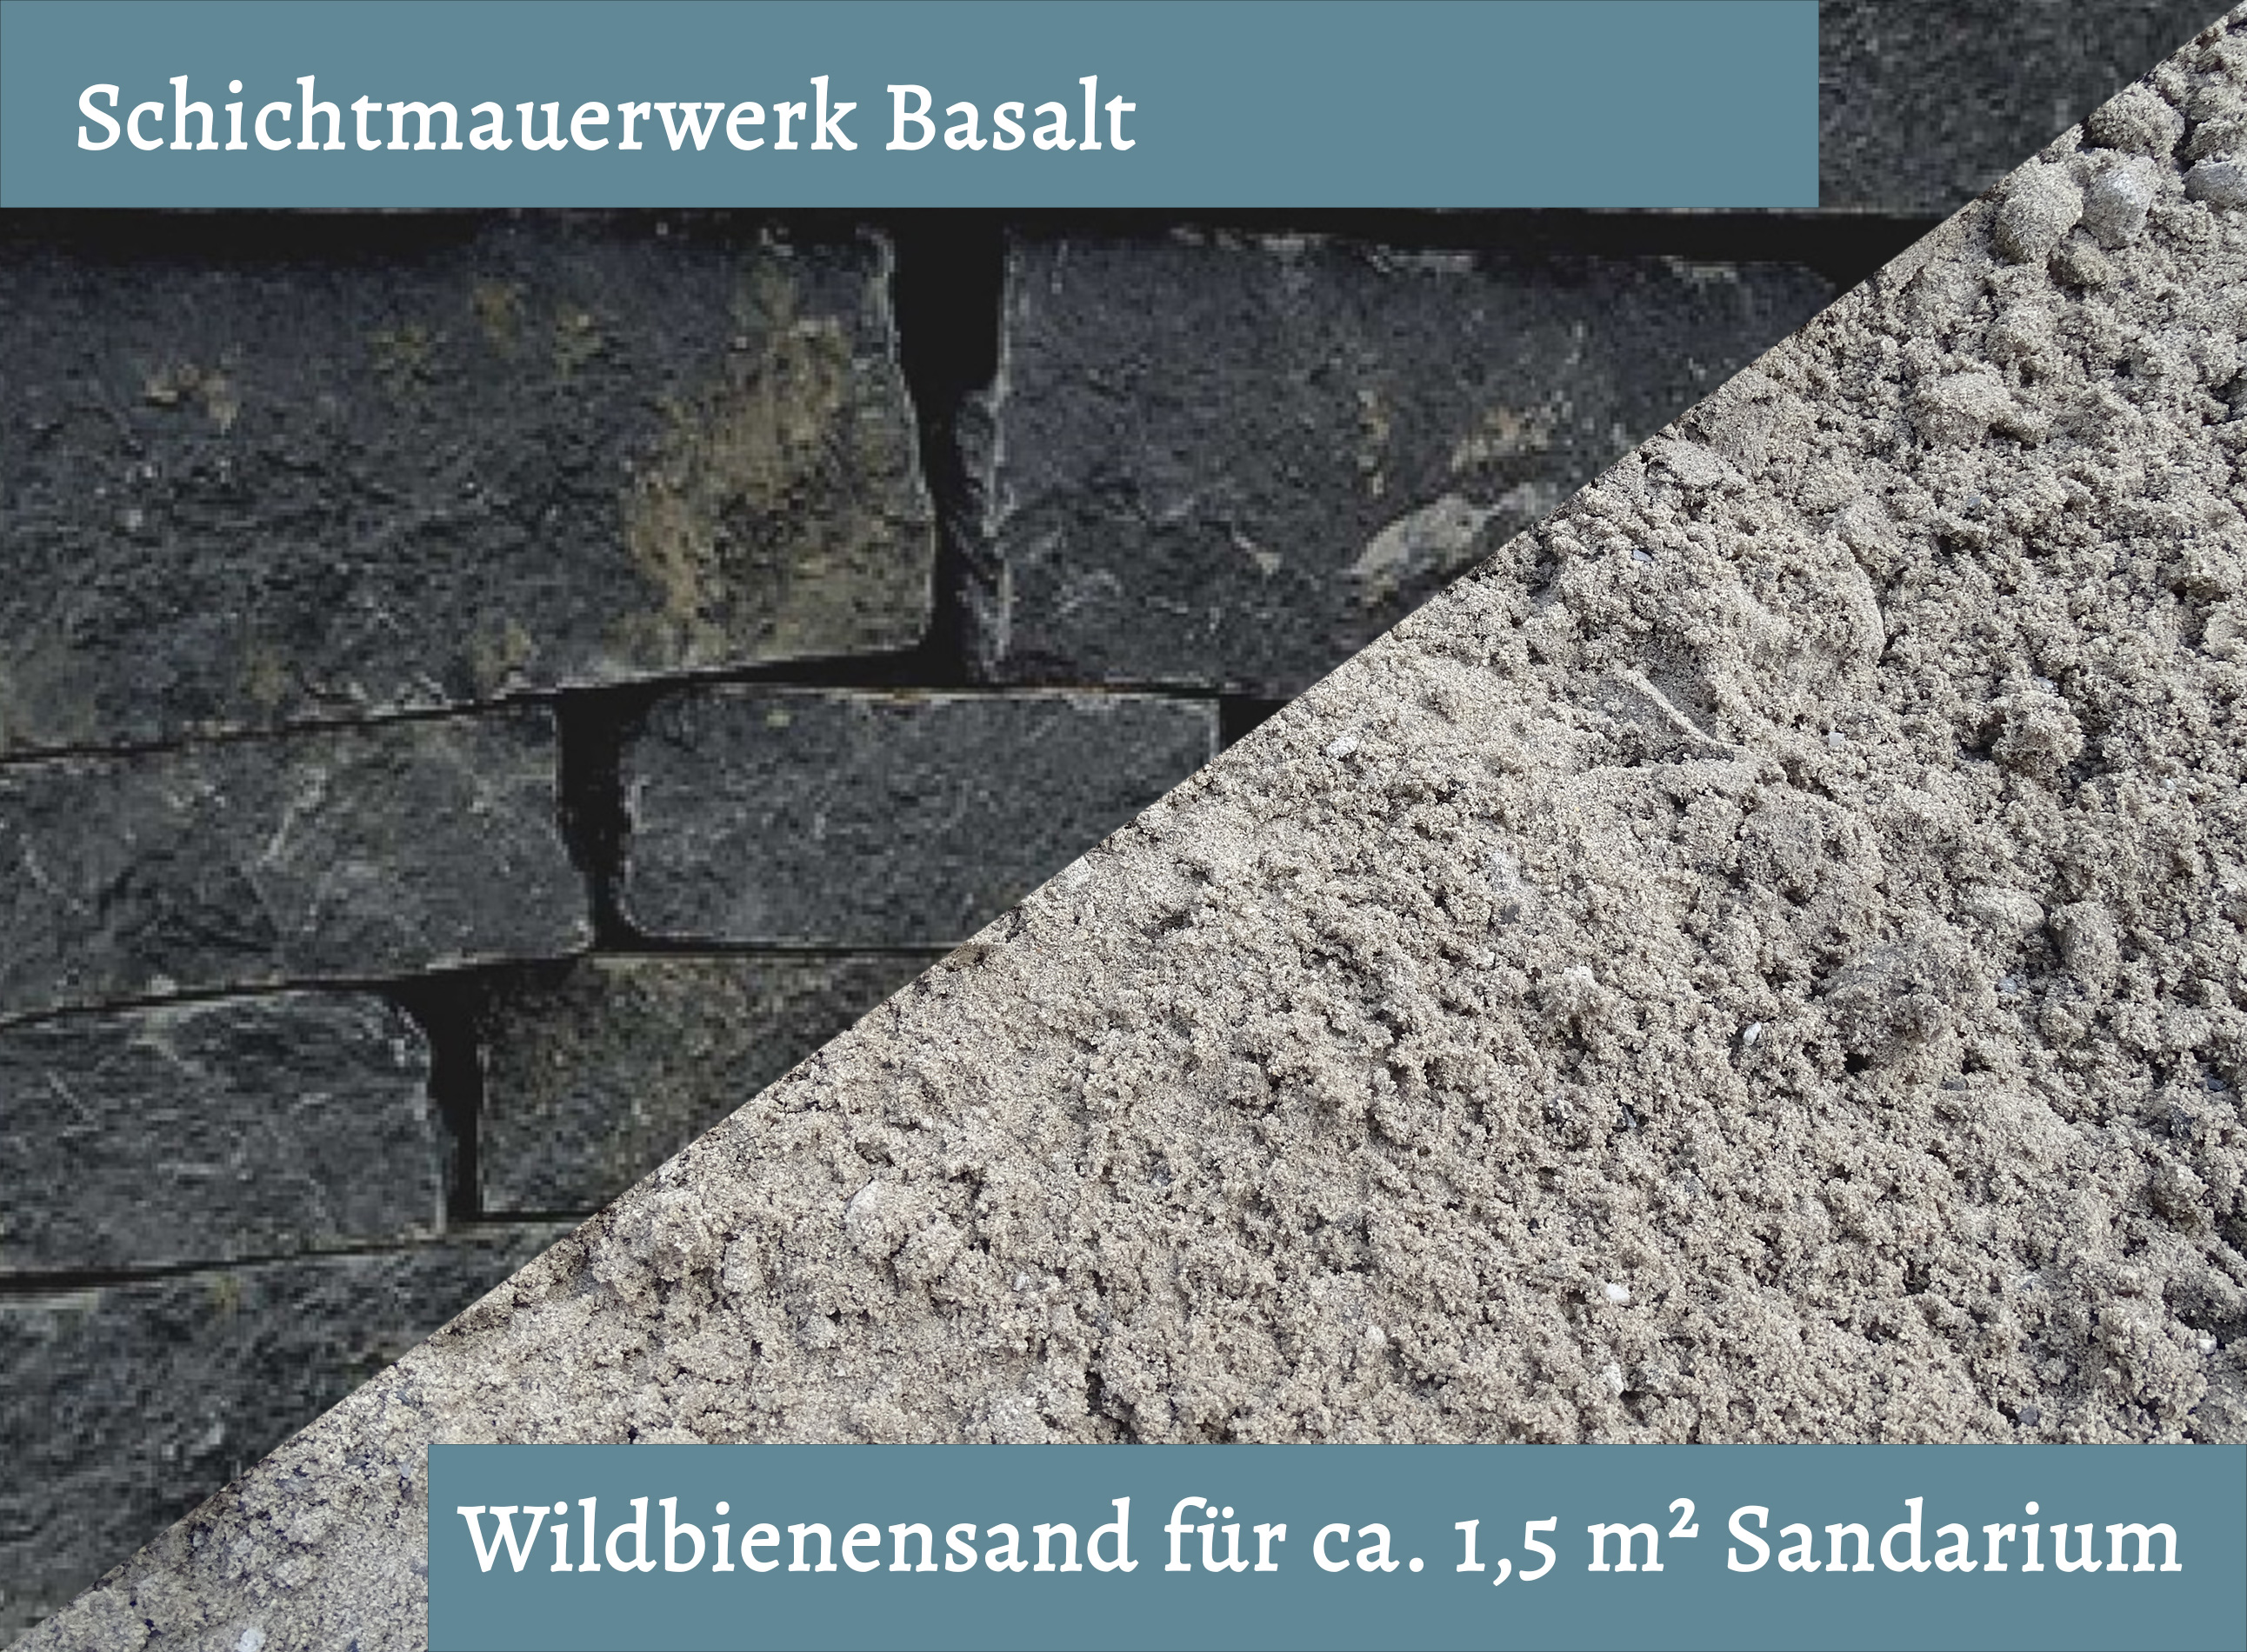 Wildbienensand mit Schichtmauer Basalt für Sandarium 1,5 m²